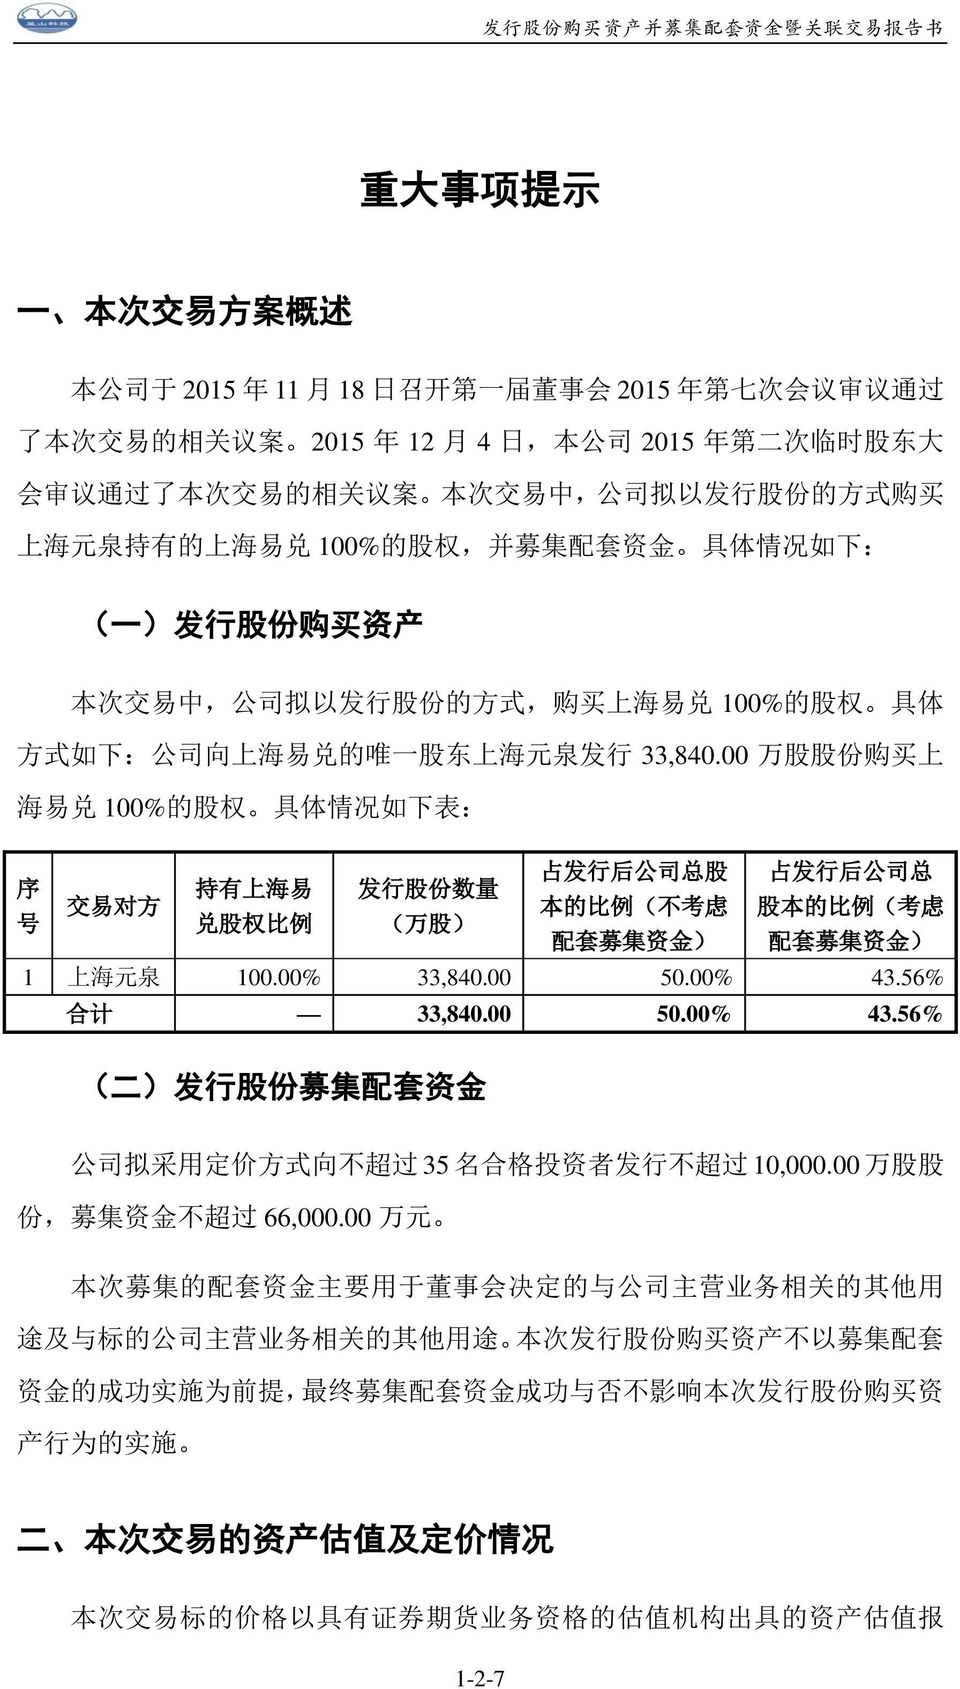 唯 一 股 东 上 海 元 泉 发 行 33,840.